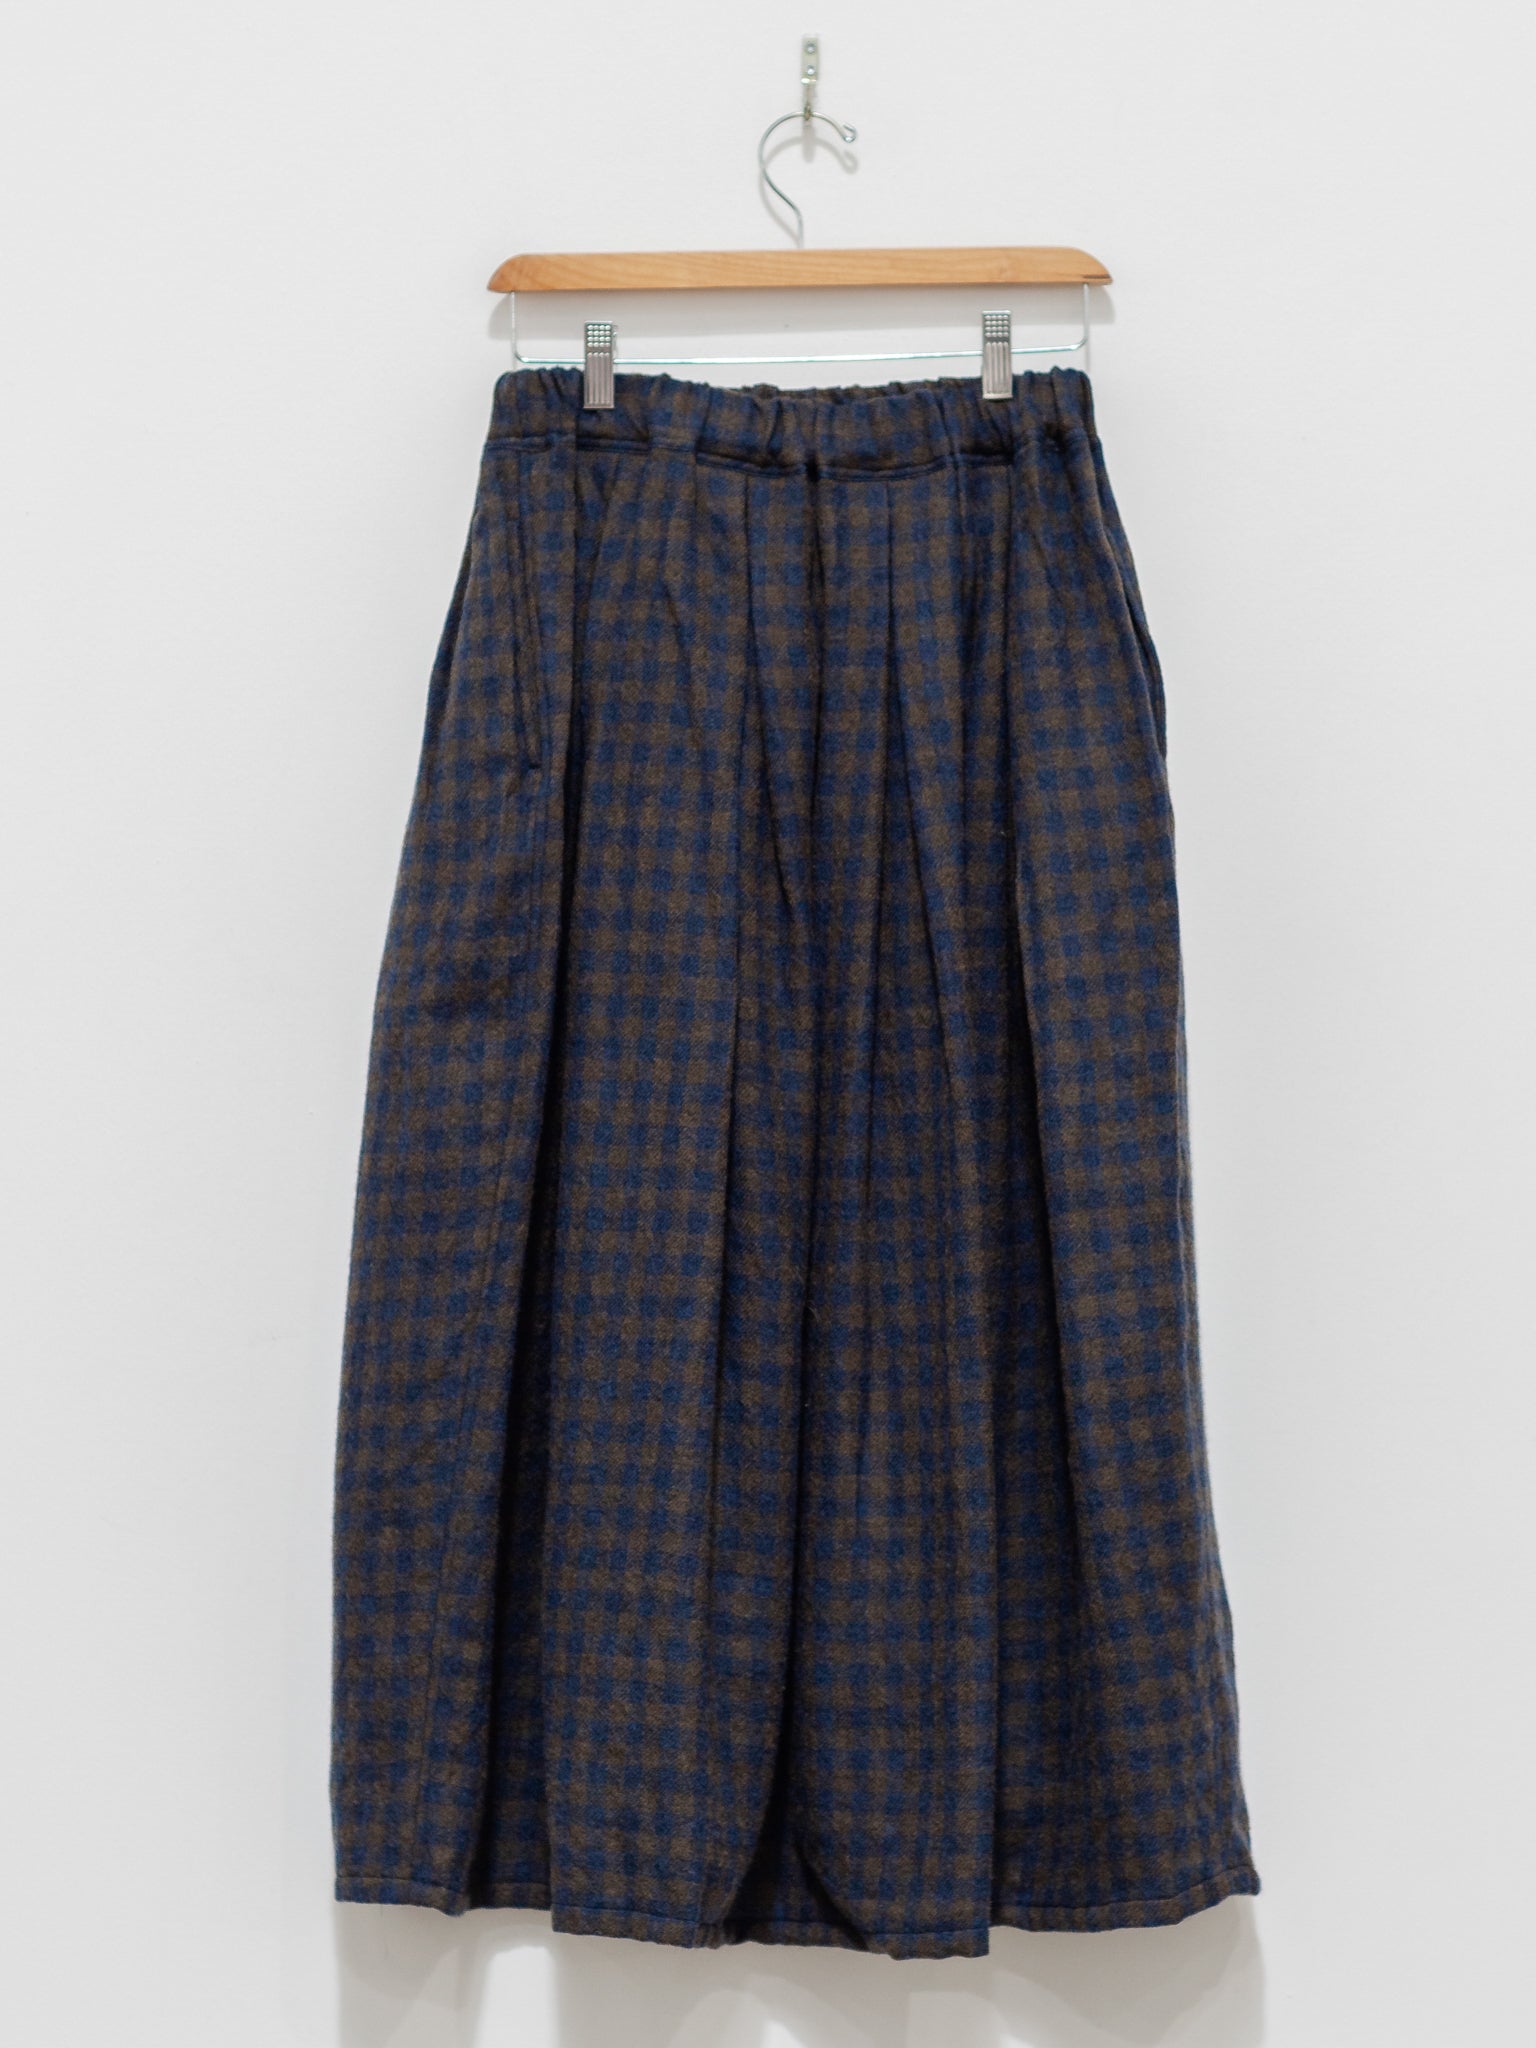 Namu Shop - ICHI Wool Gingham Skirt - Navy x Brown